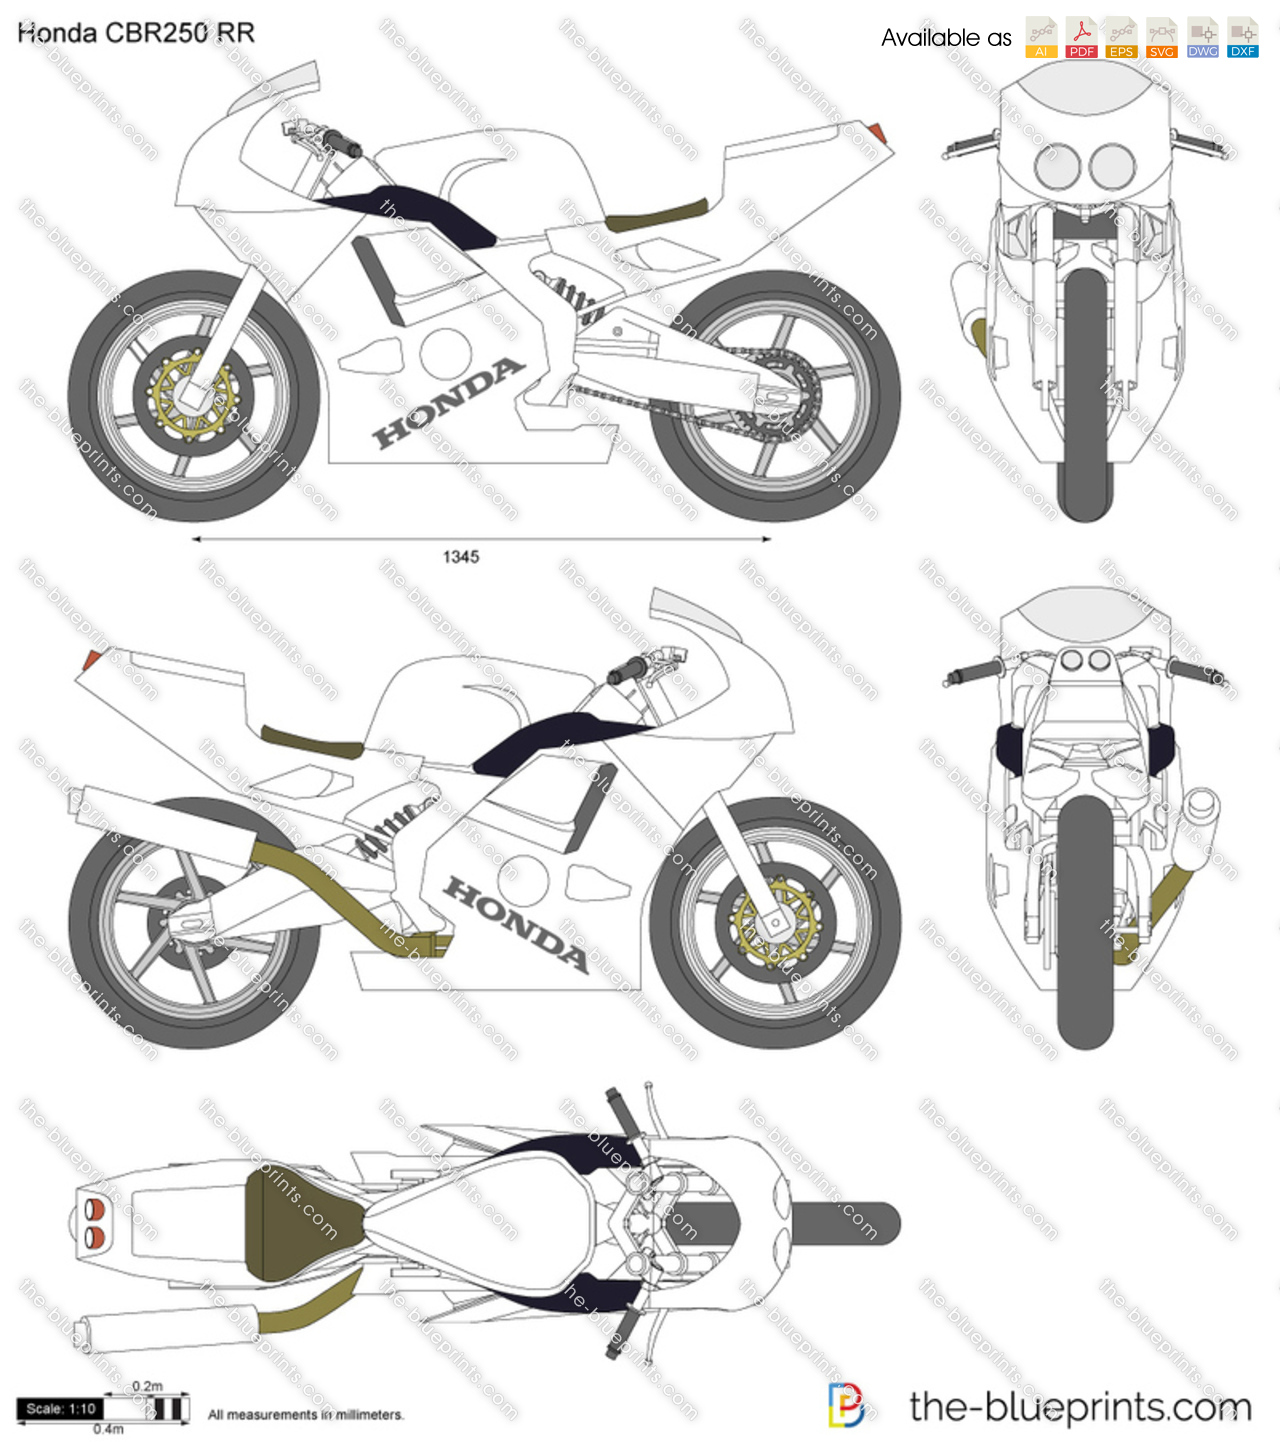 Honda CBR250 RR